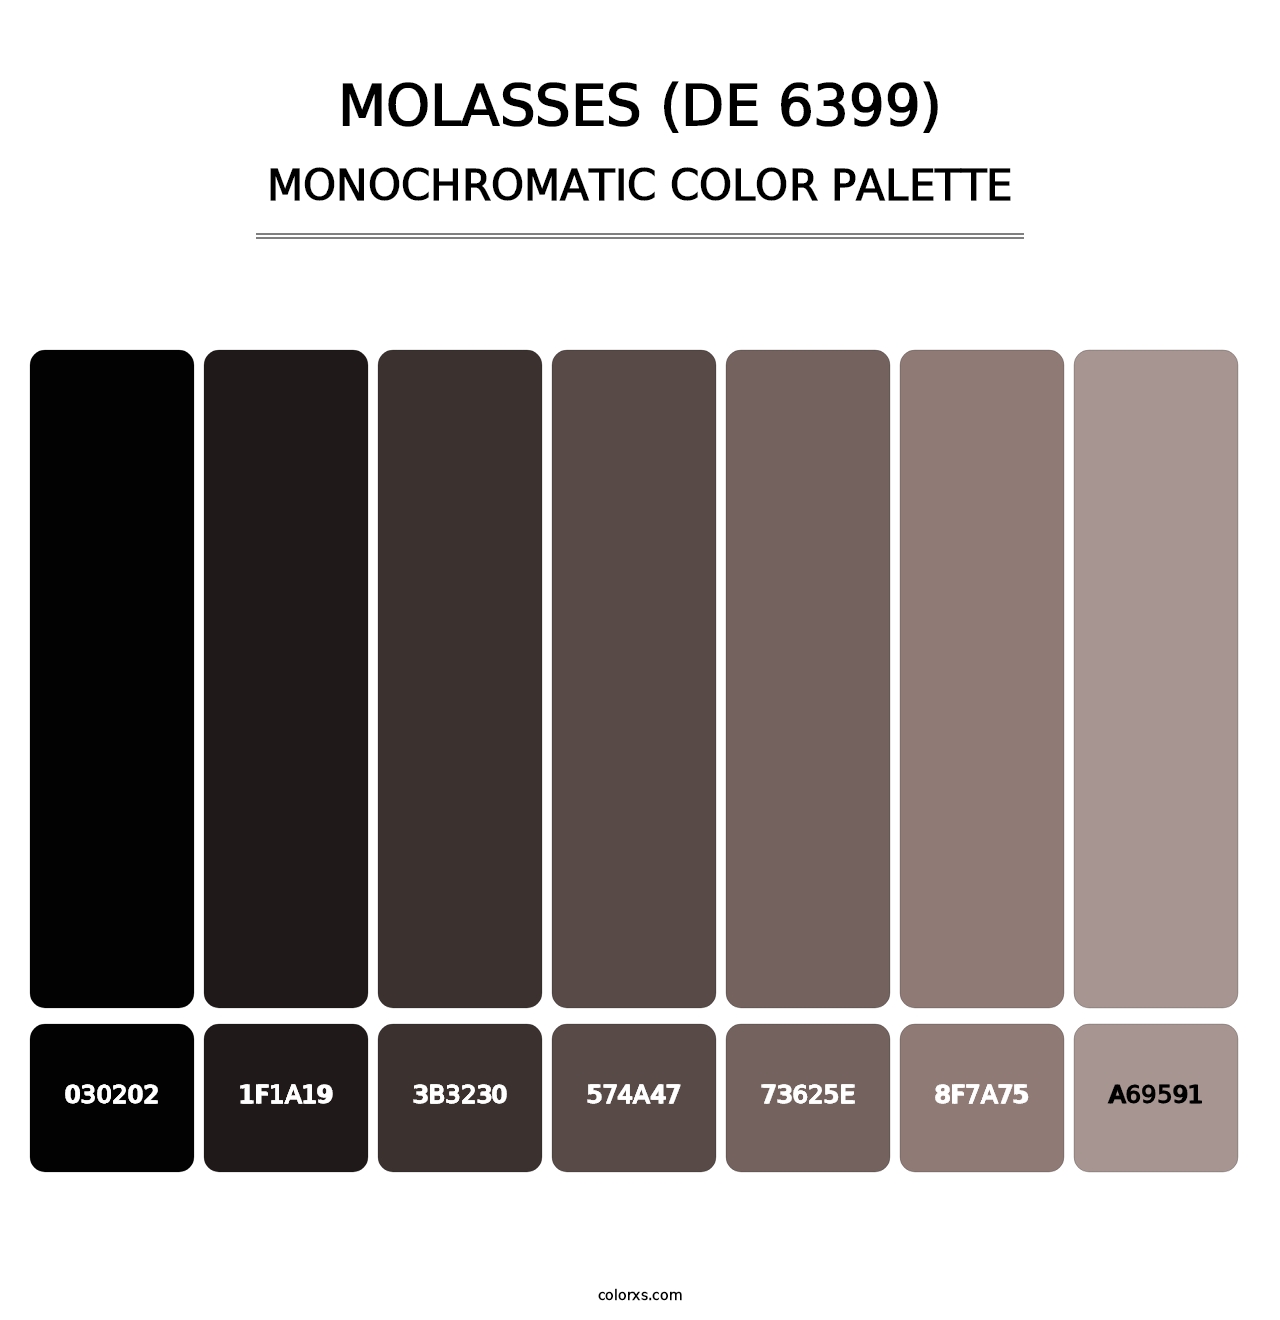 Molasses (DE 6399) - Monochromatic Color Palette